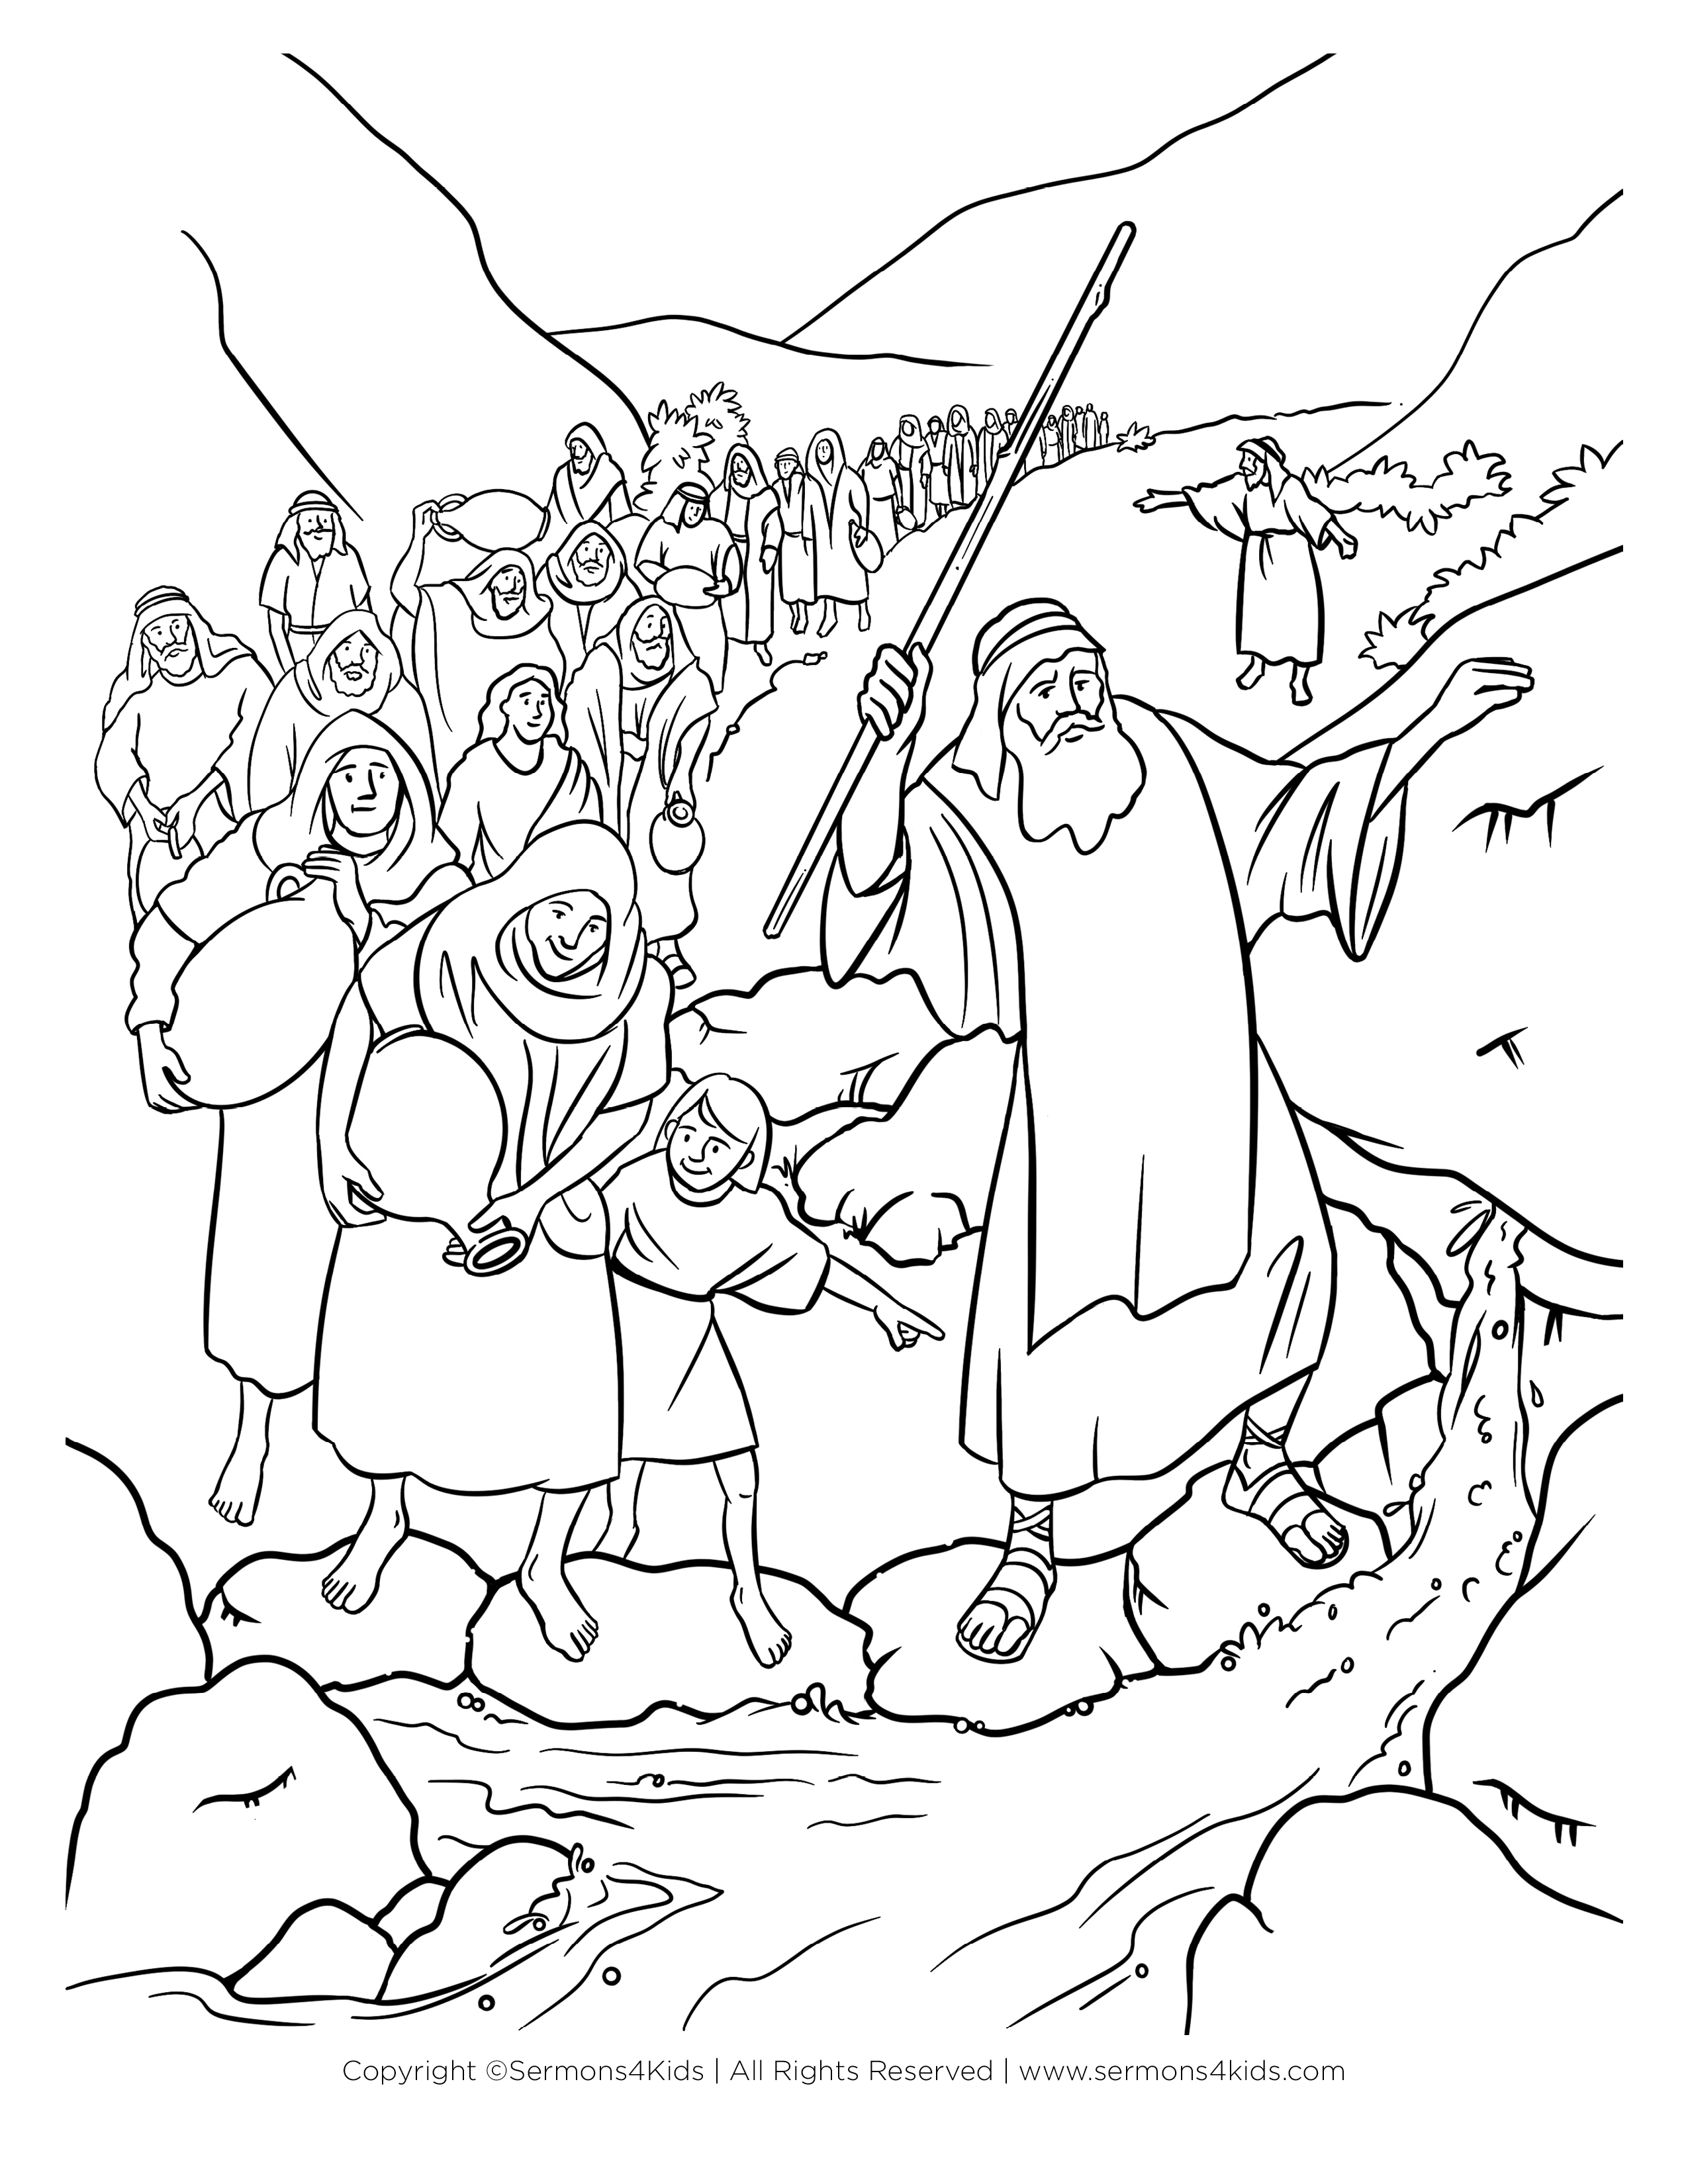 Moisés saca agua de una roca